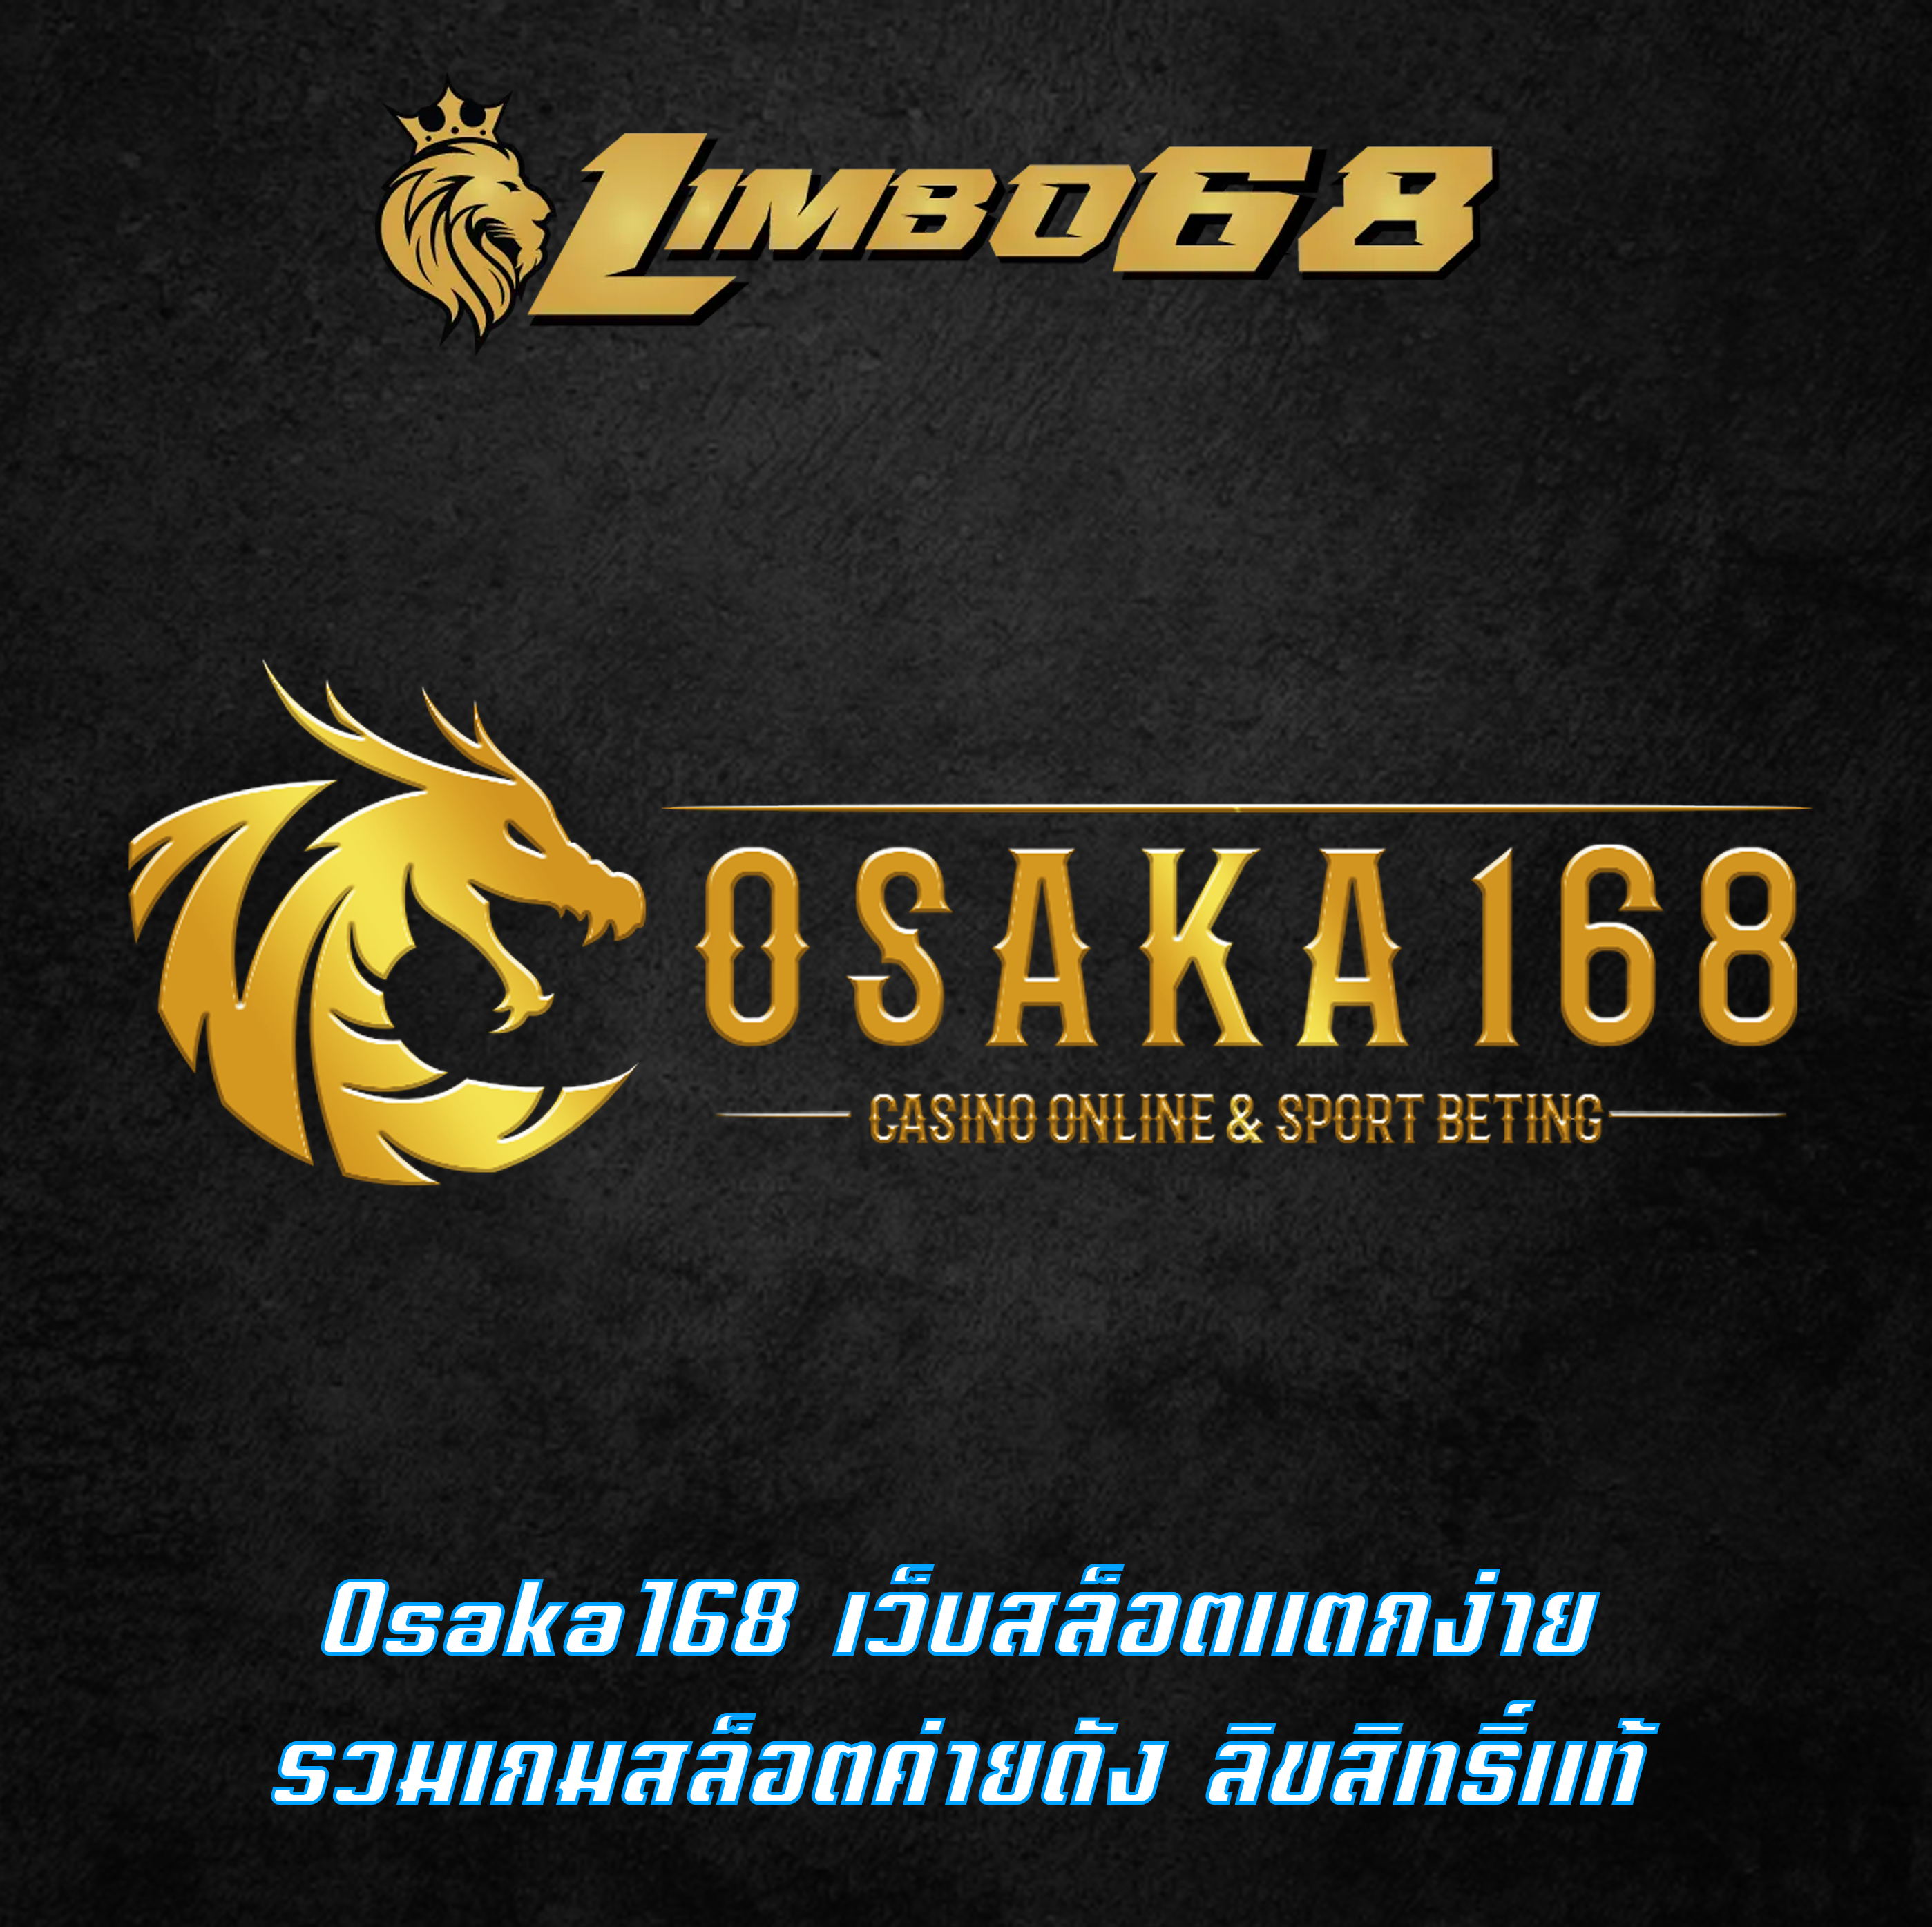 Osaka168 เว็บสล็อตแตกง่าย รวมเกมสล็อตค่ายดัง ลิขสิทธิ์แท้